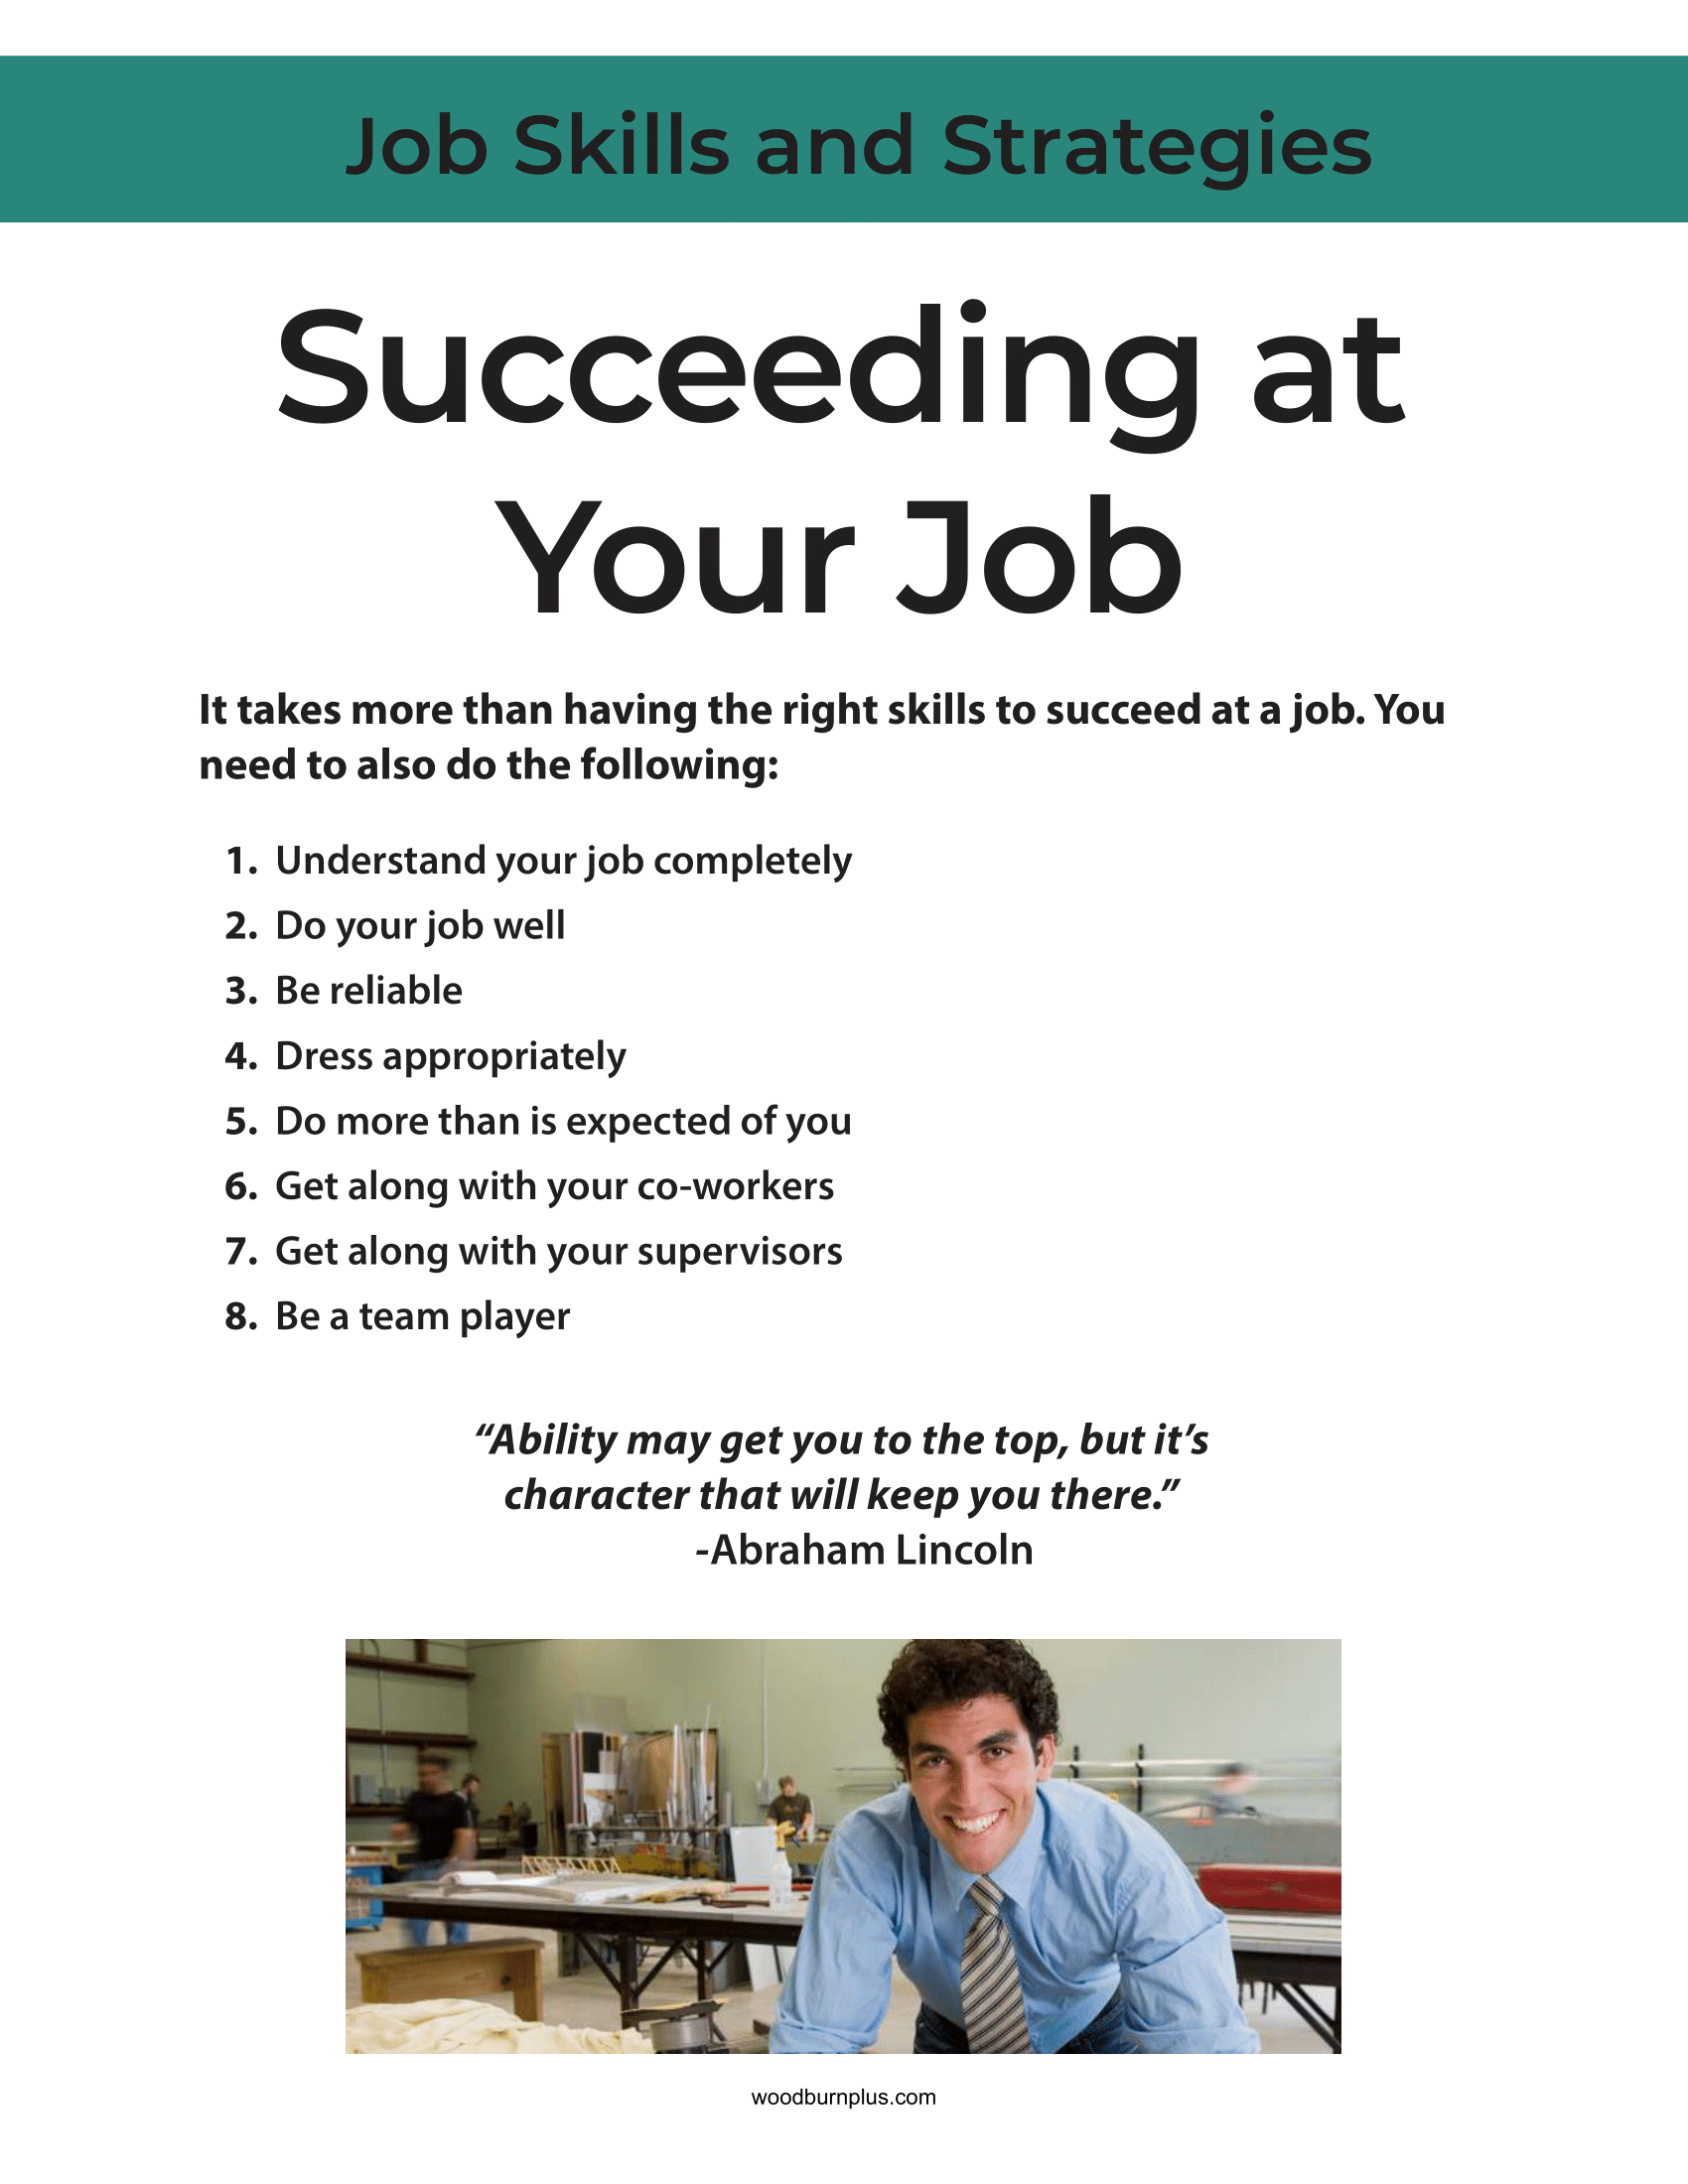 Succeeding at Your Job